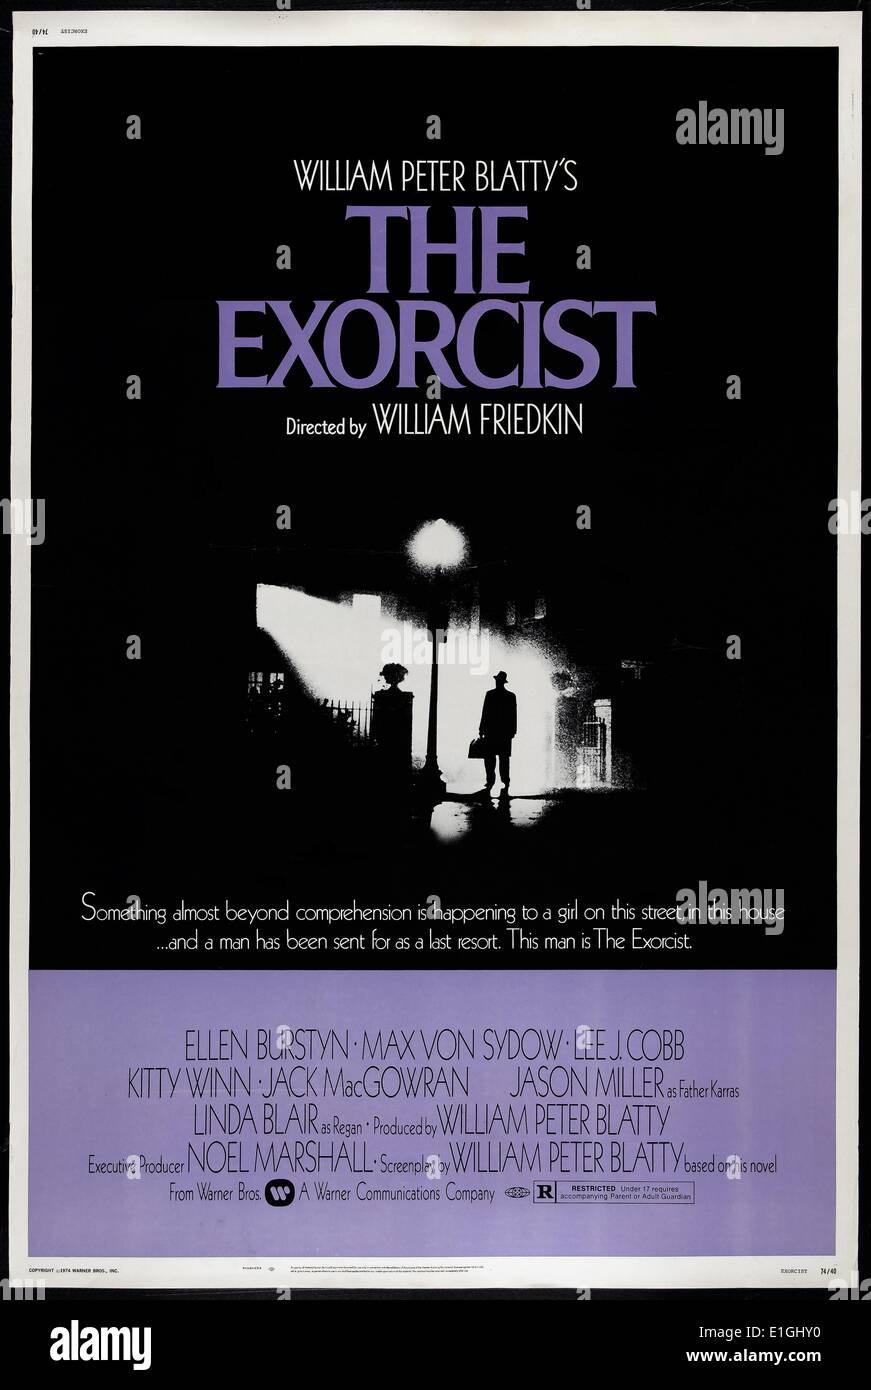 Der Exorzist Eine 1973 Amerikanische übernatürlichen Horror Film mit Linda Blair und Max von Sydow. Stockfoto